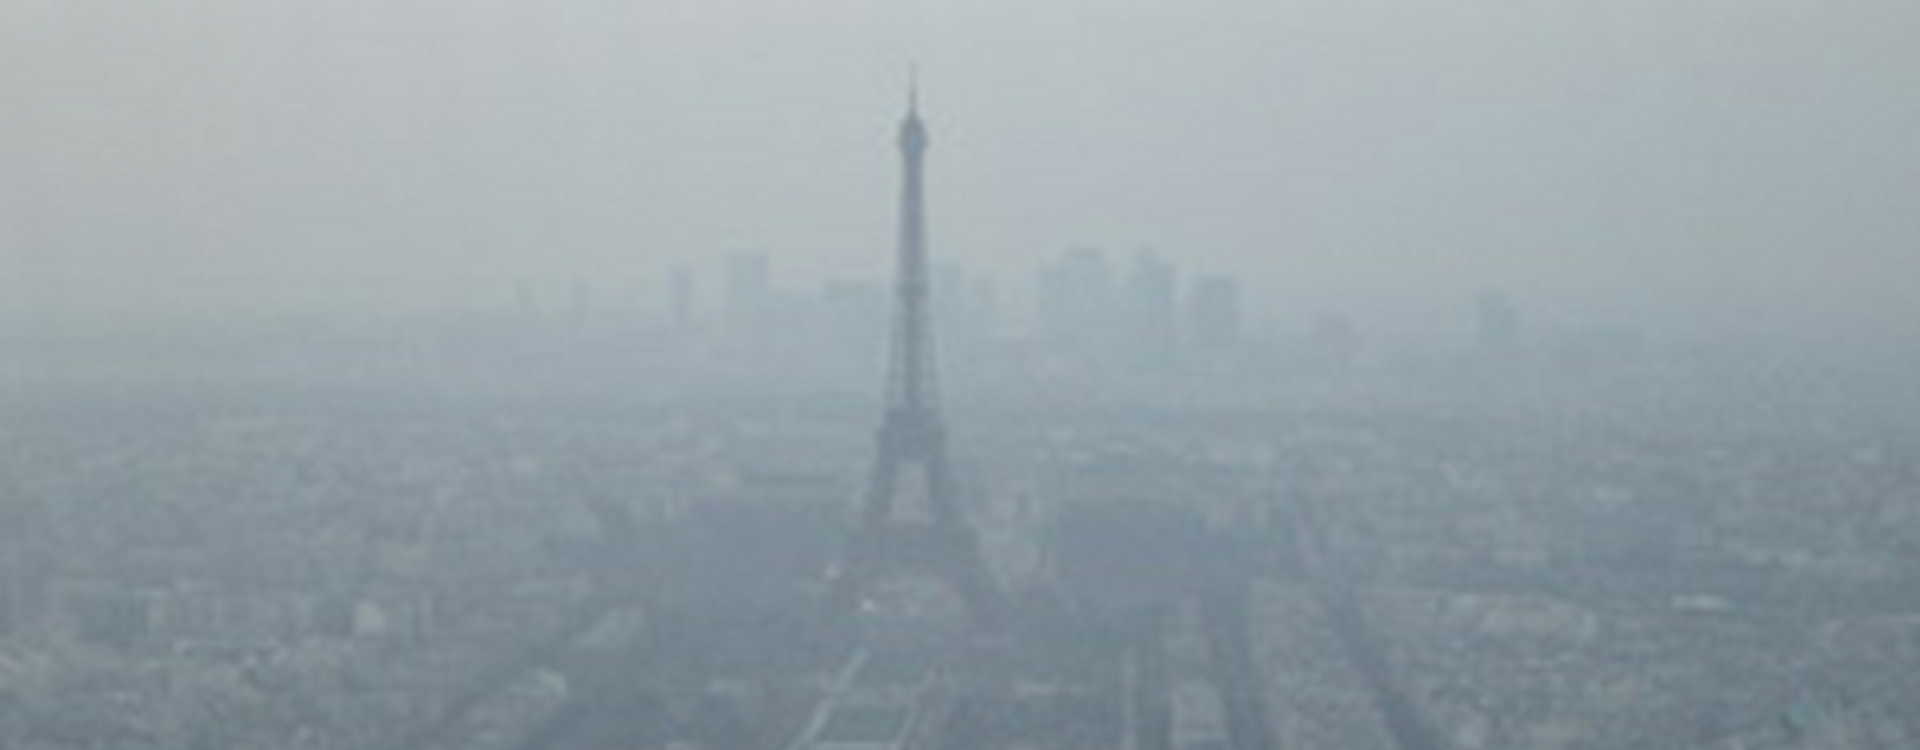 La pollution de l'air en France, et dans le monde